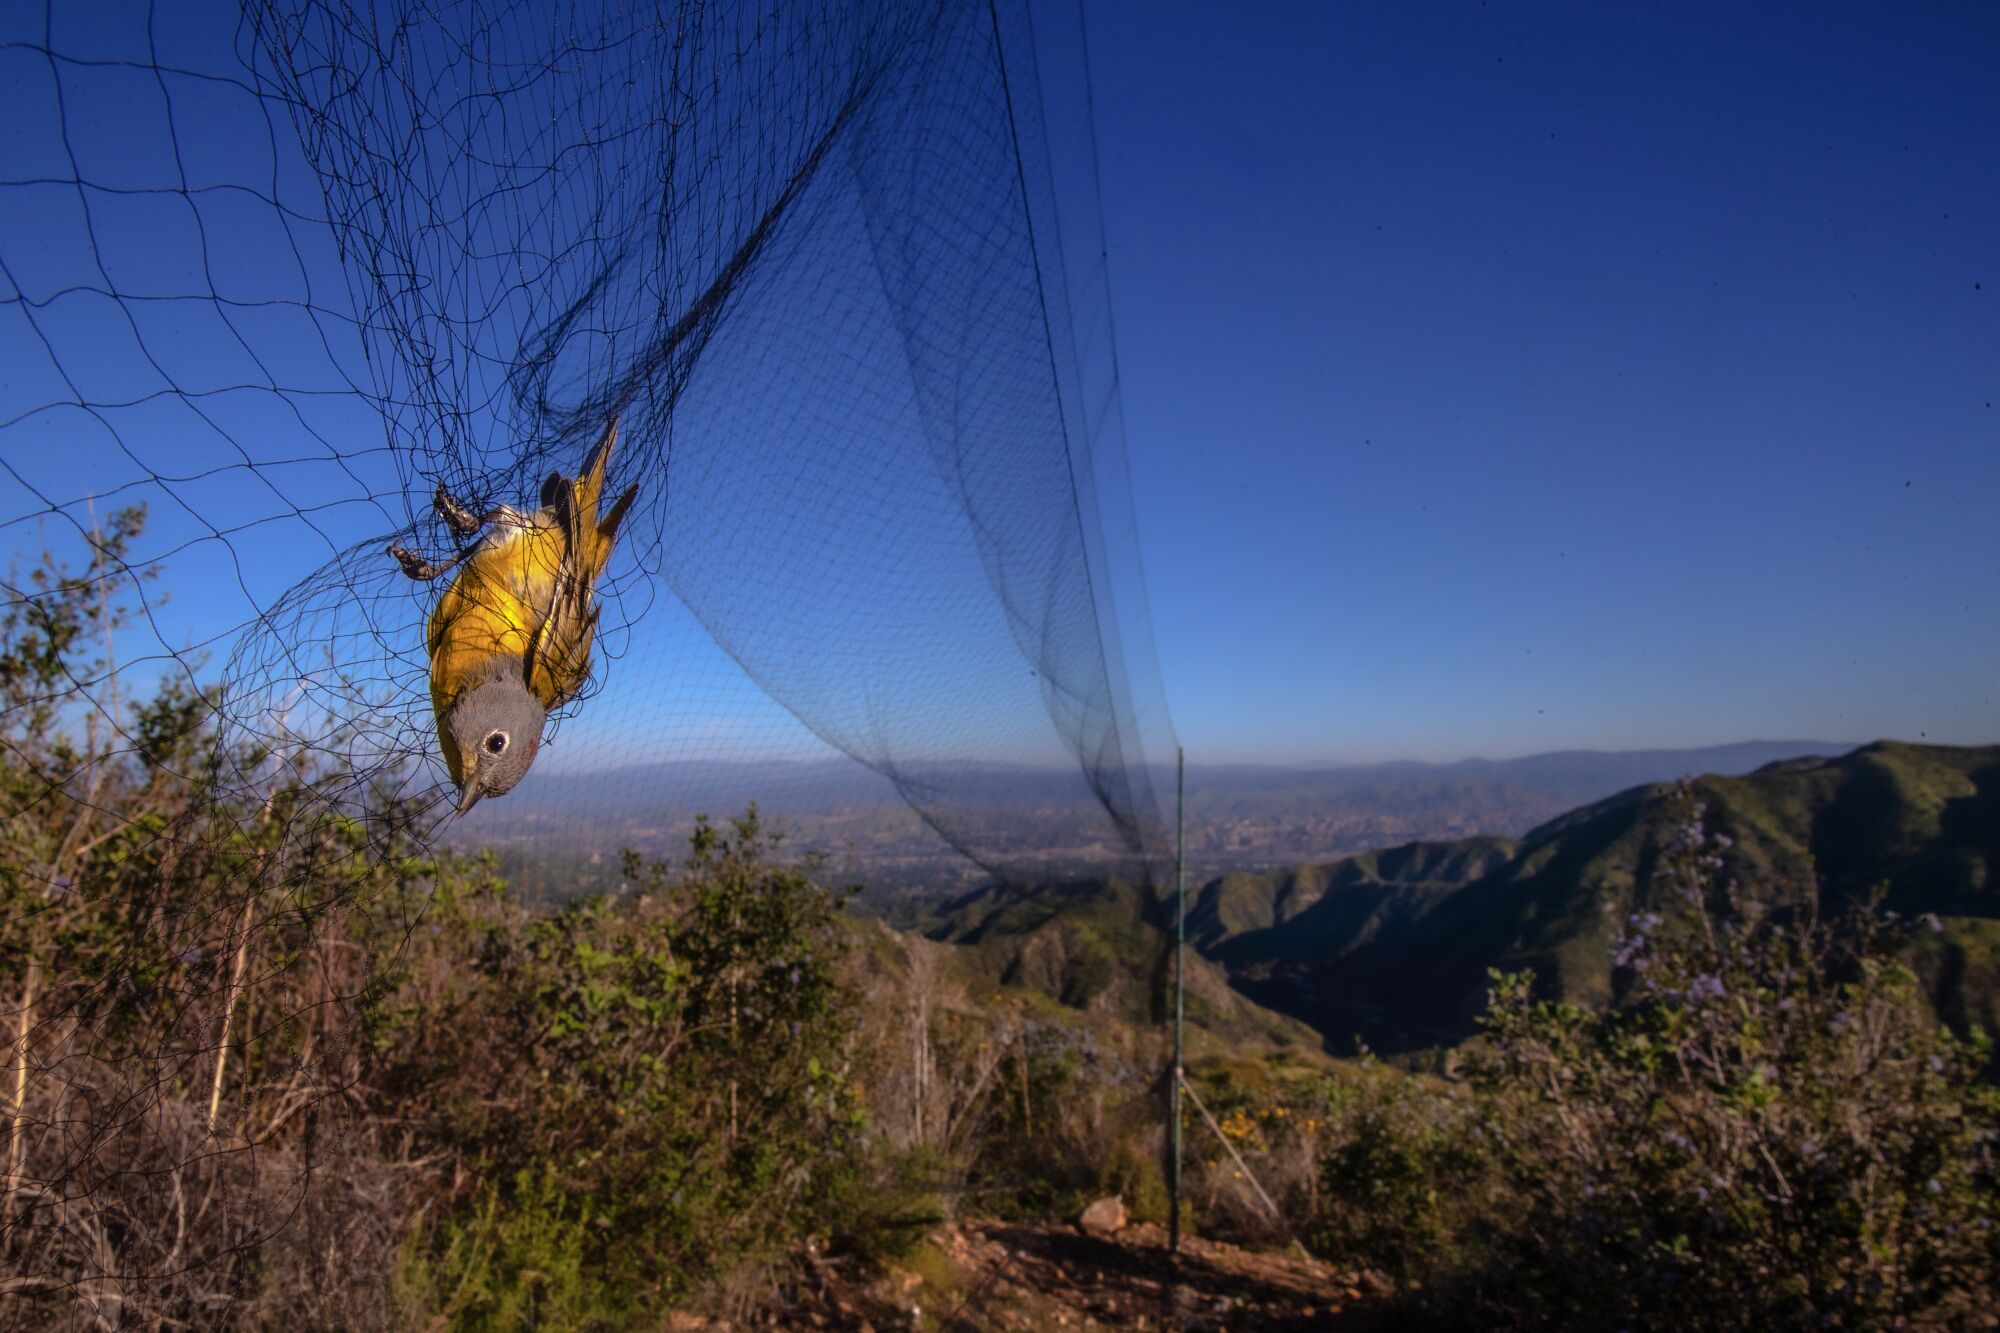 A bird is caught in a net